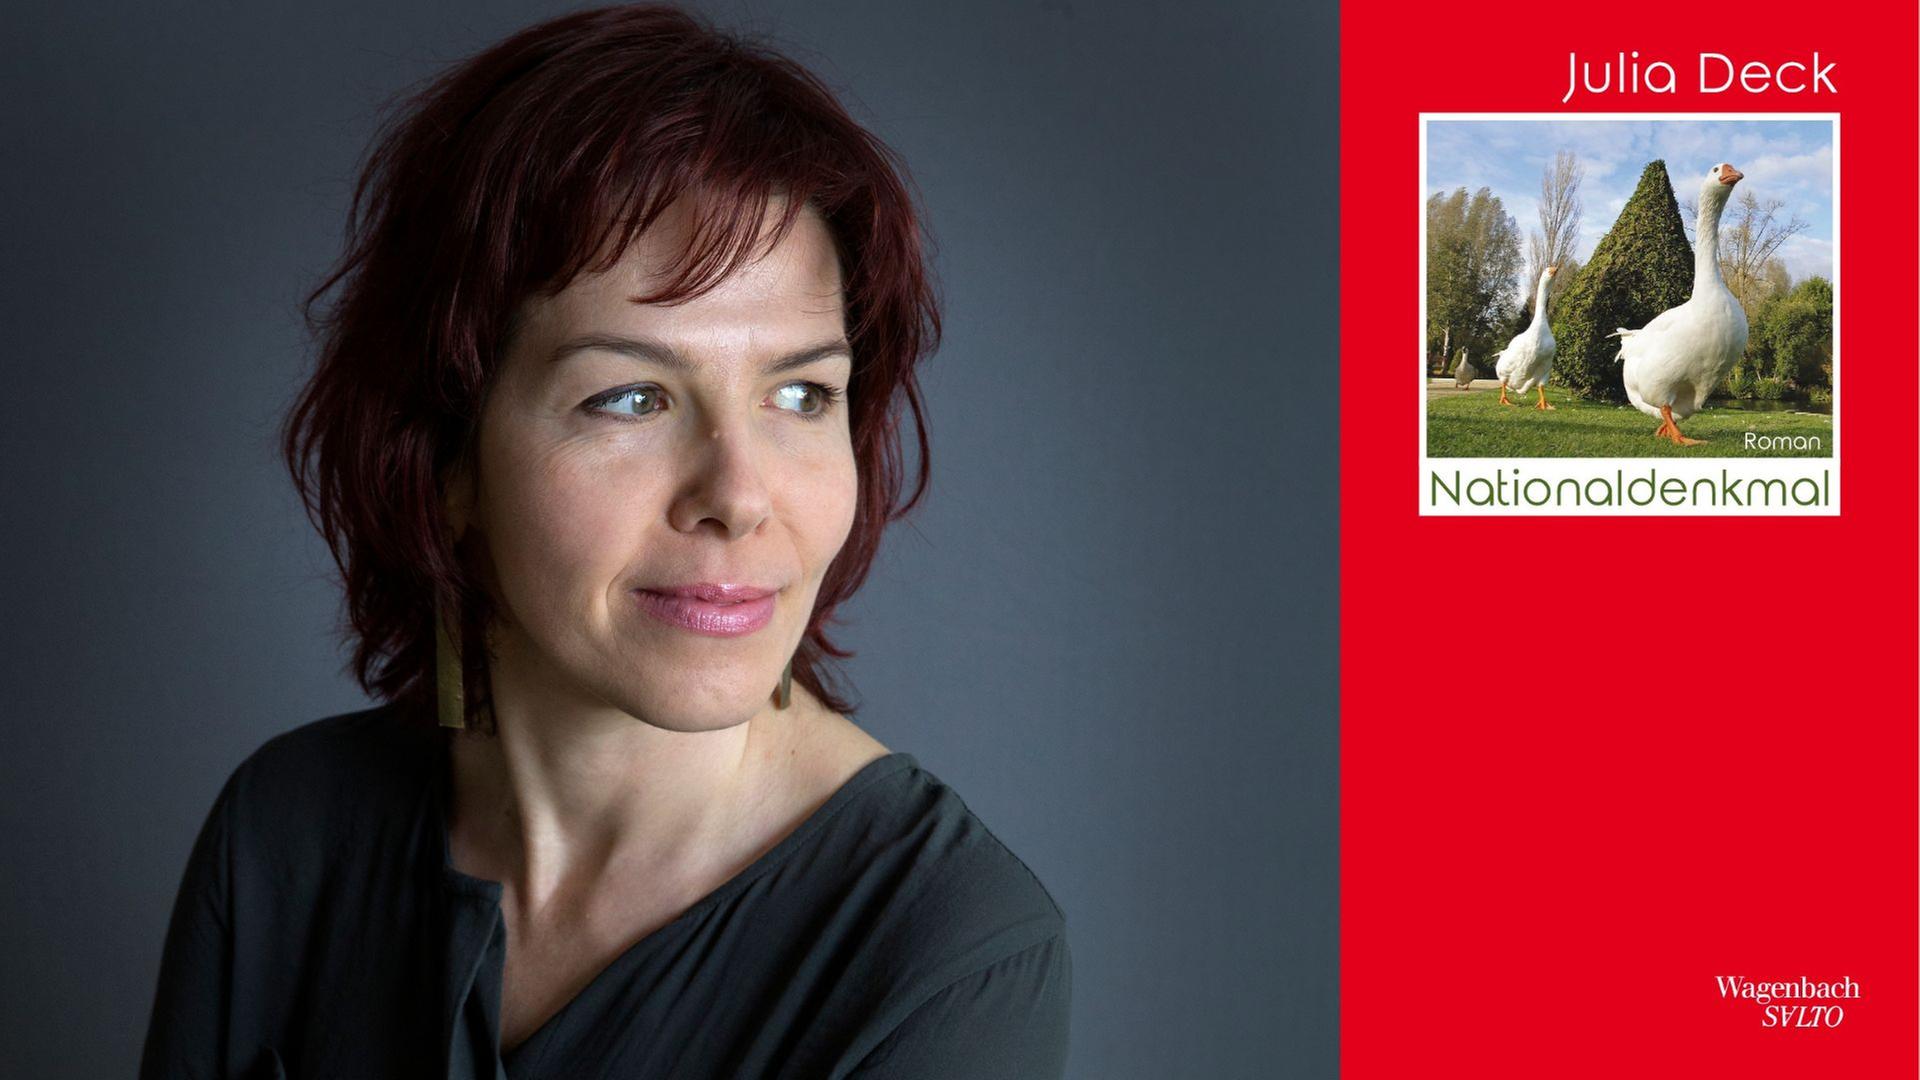 Julia Deck: "Nationaldenkmal"
Zu sehen sind die Autorin und das Buchcover